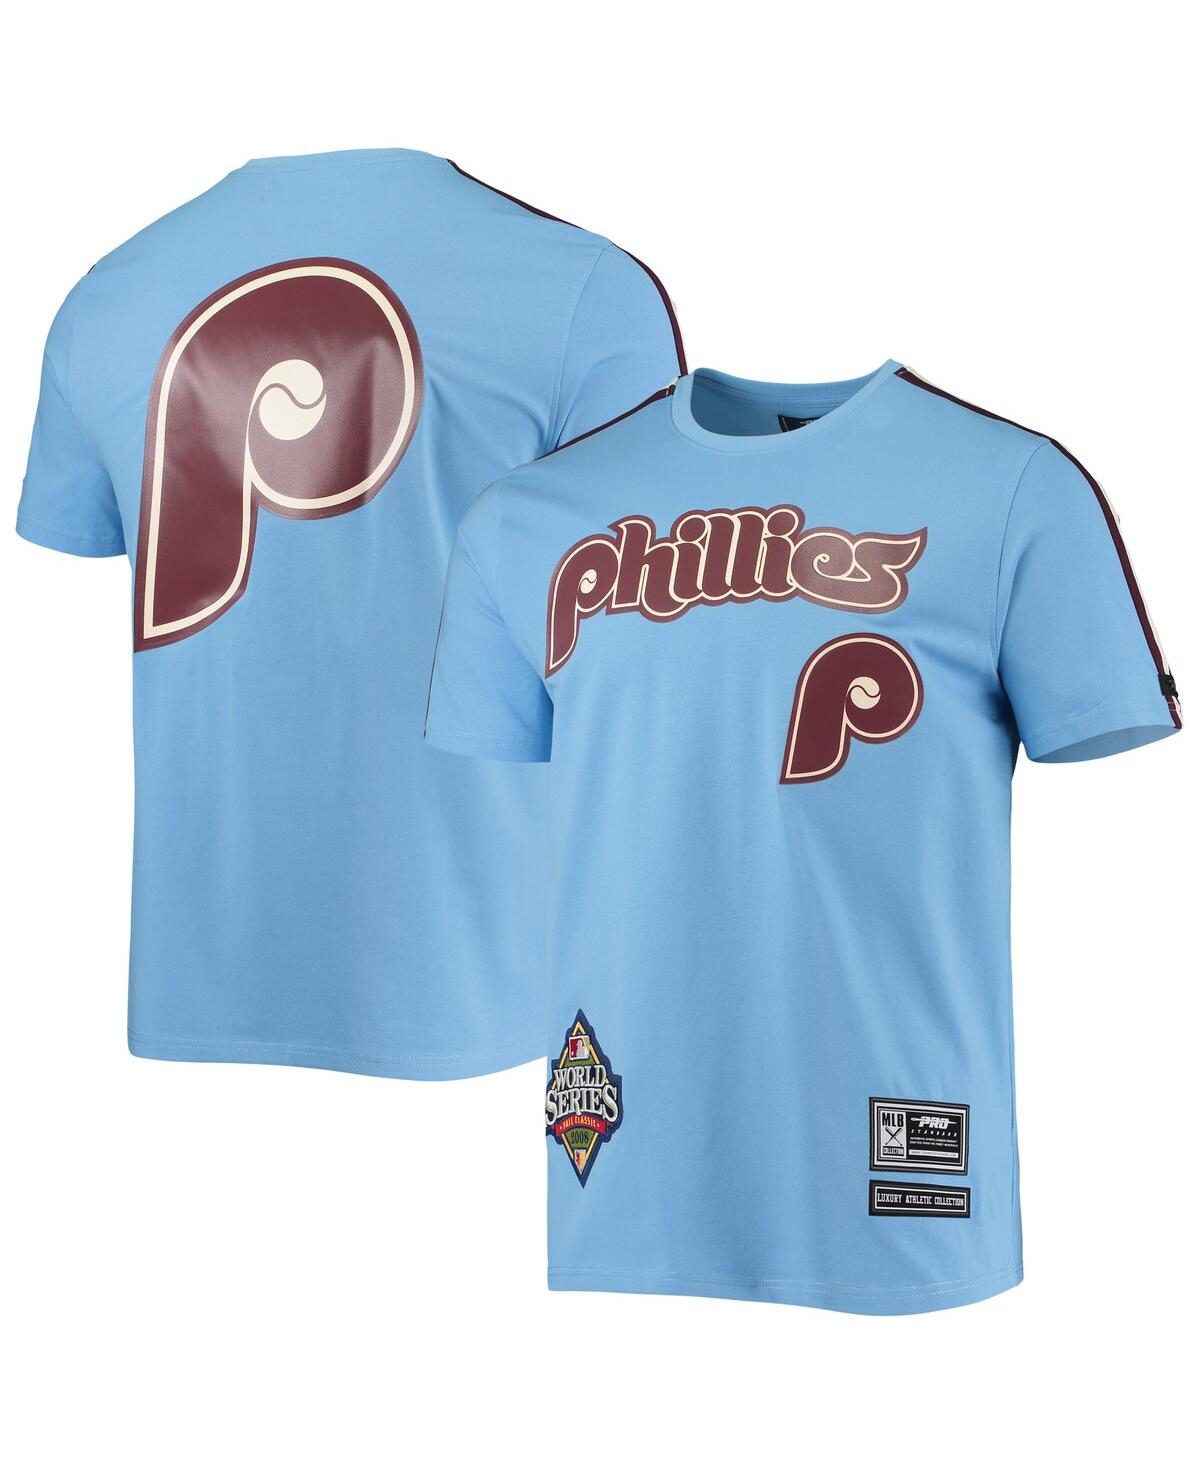 Pro Standard Men's Light Blue, Burgundy Philadelphia Phillies